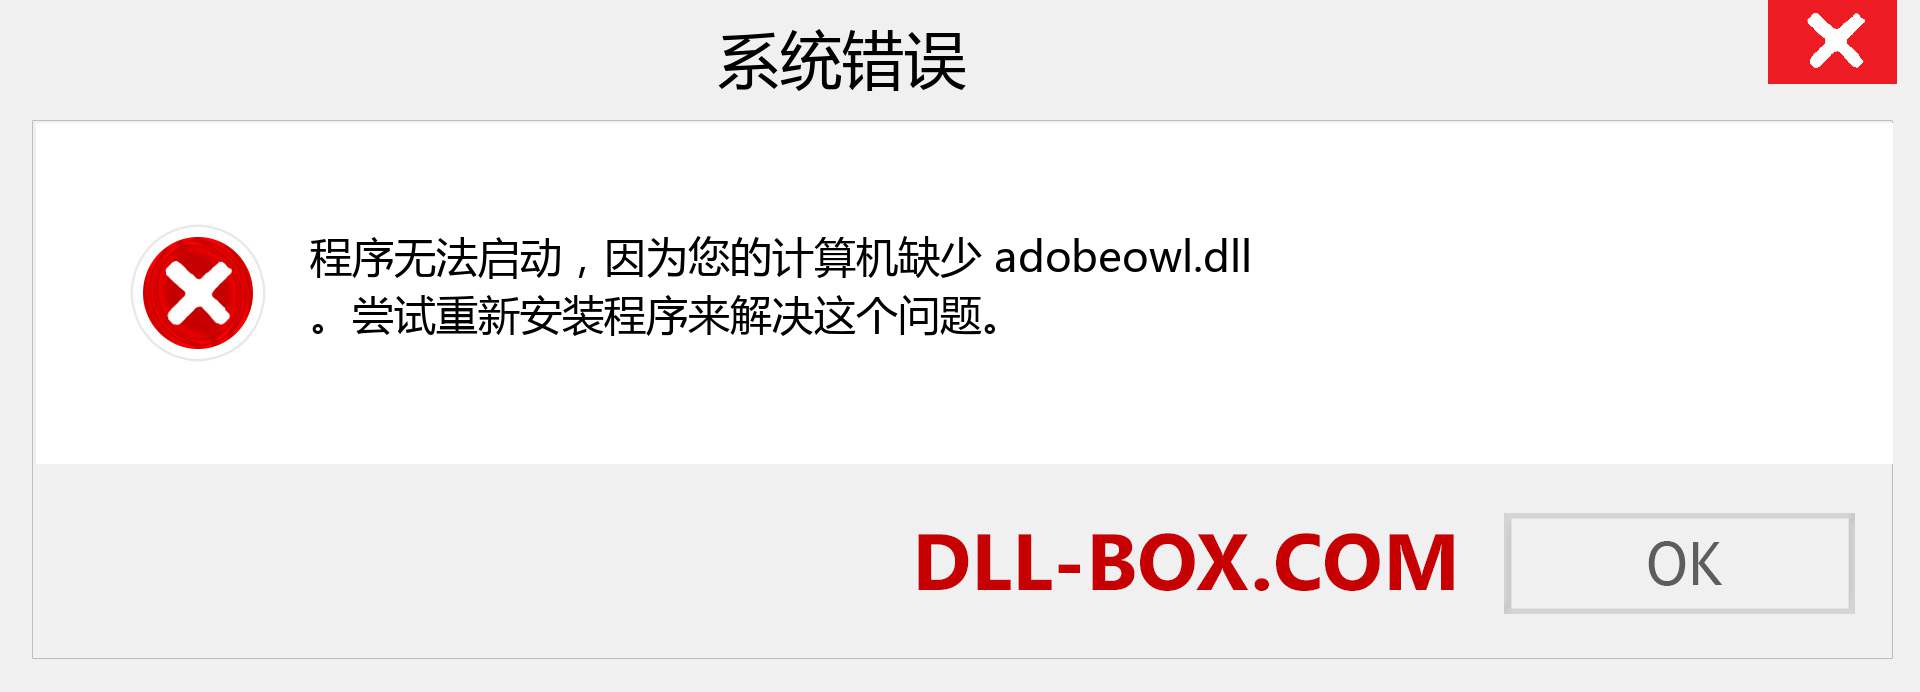 adobeowl.dll 文件丢失？。 适用于 Windows 7、8、10 的下载 - 修复 Windows、照片、图像上的 adobeowl dll 丢失错误